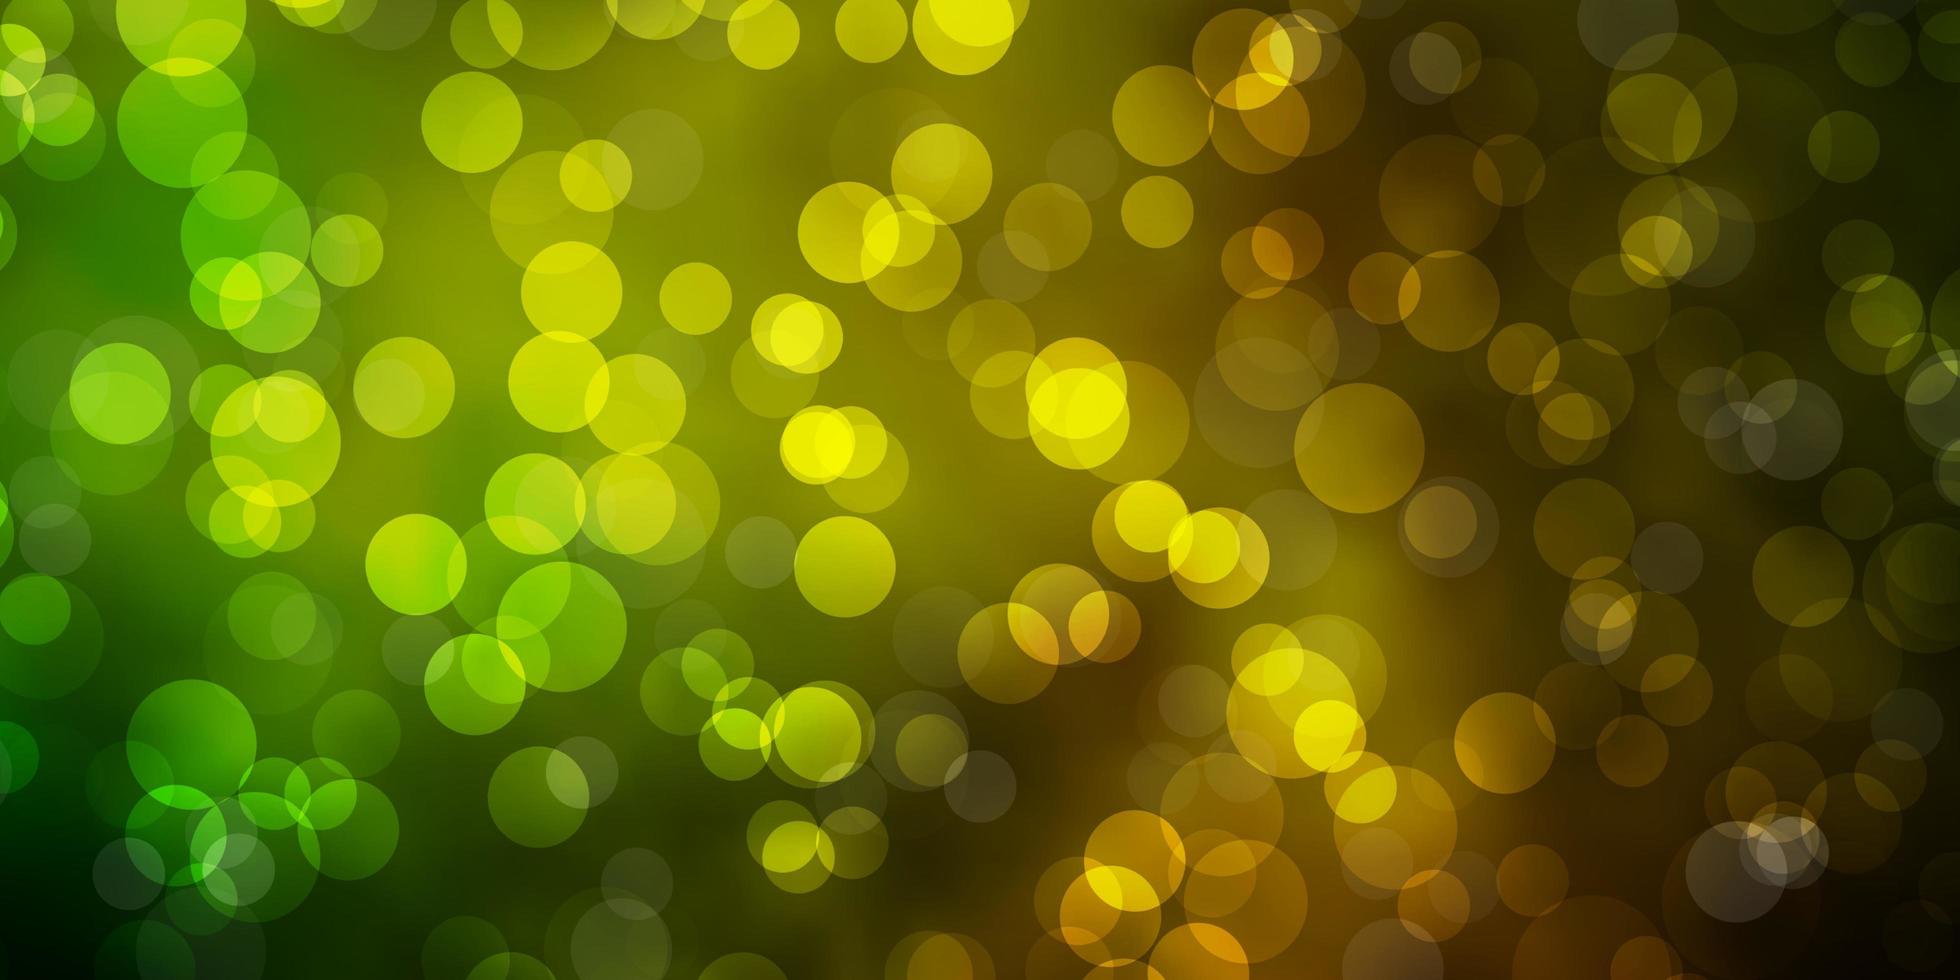 fond de vecteur jaune vert foncé avec illustration de bulles avec un ensemble de sphères abstraites colorées brillantes pour les brochures dépliants